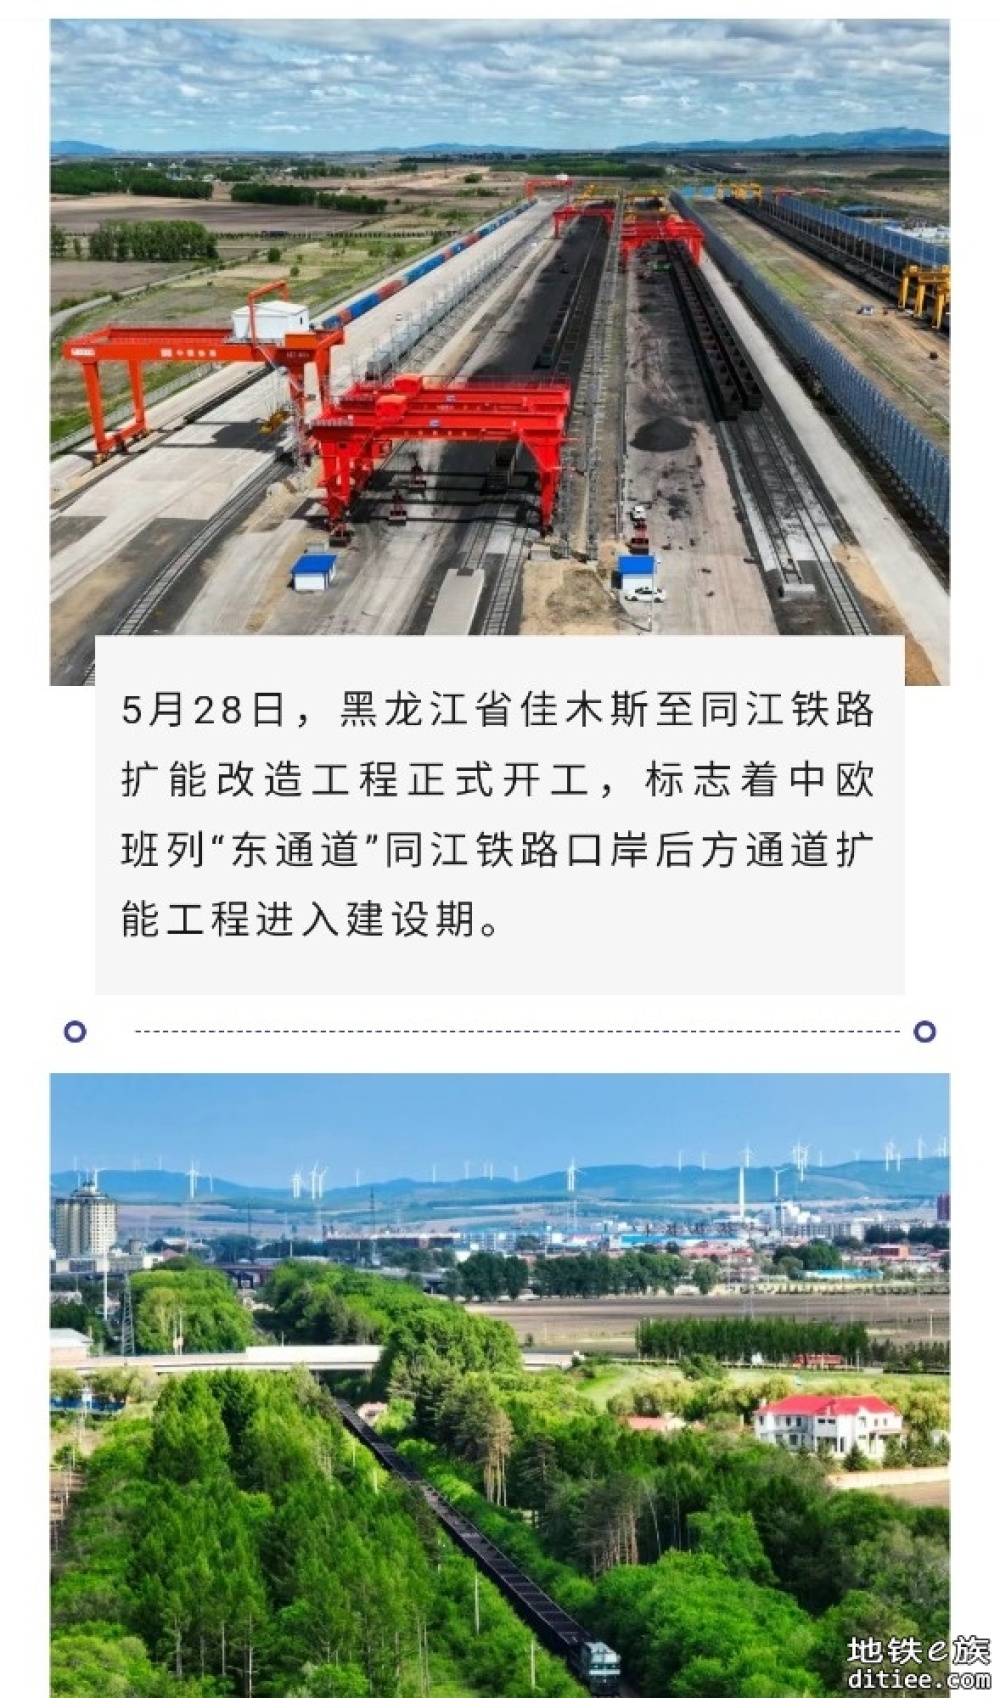 佳木斯至同江铁路扩能改造工程 5月28日开建，总工期为3年